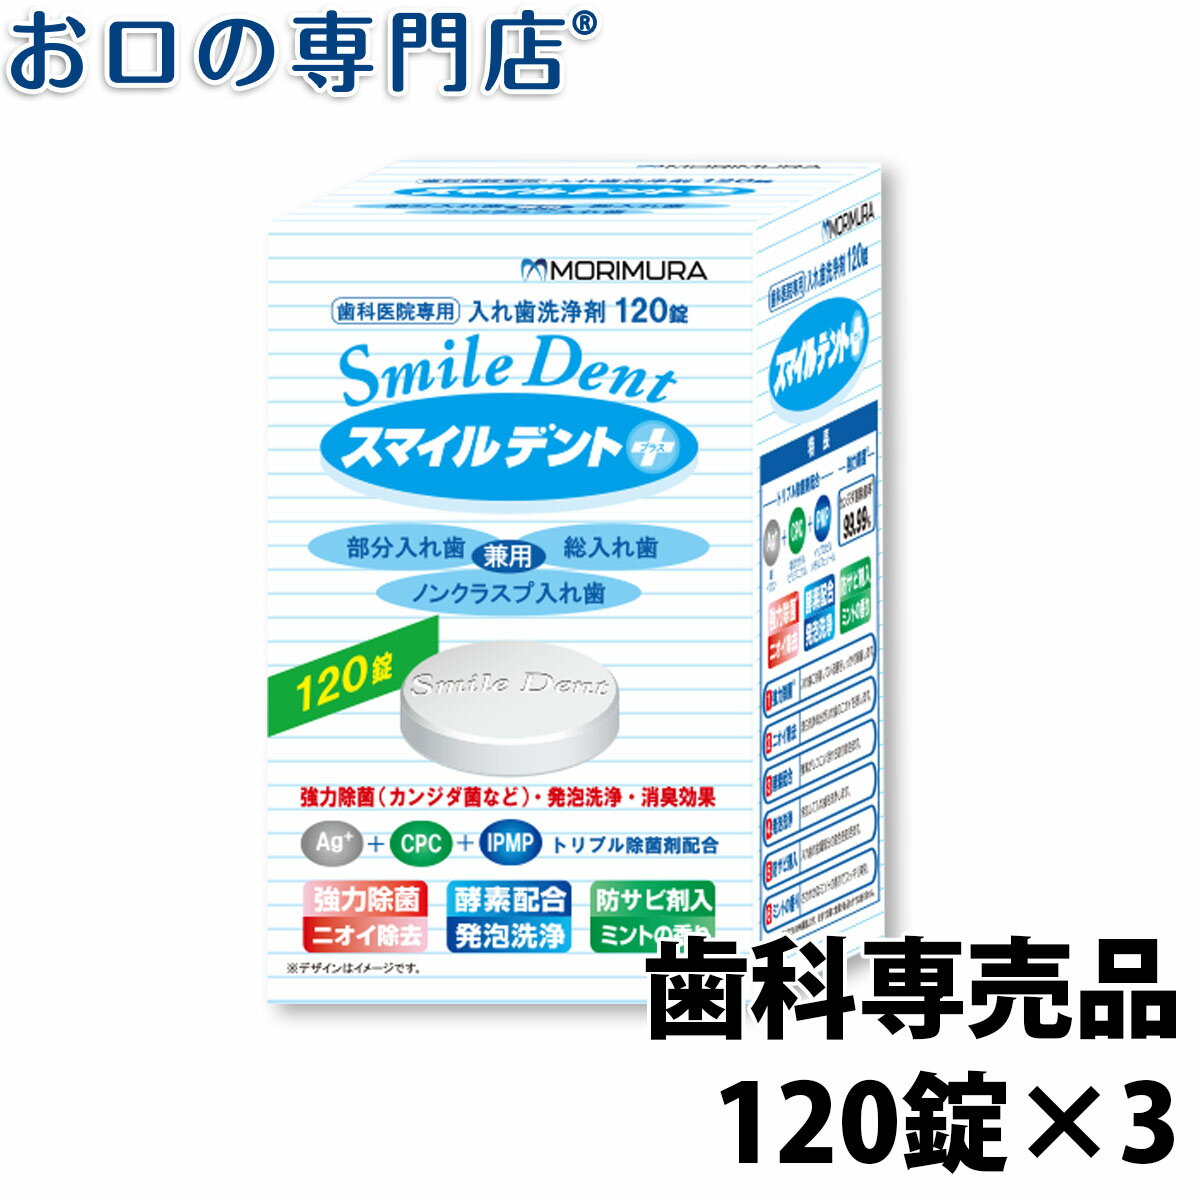 【あす楽 送料無料】 スマイルデント(120錠)×3個セット 歯科専売品